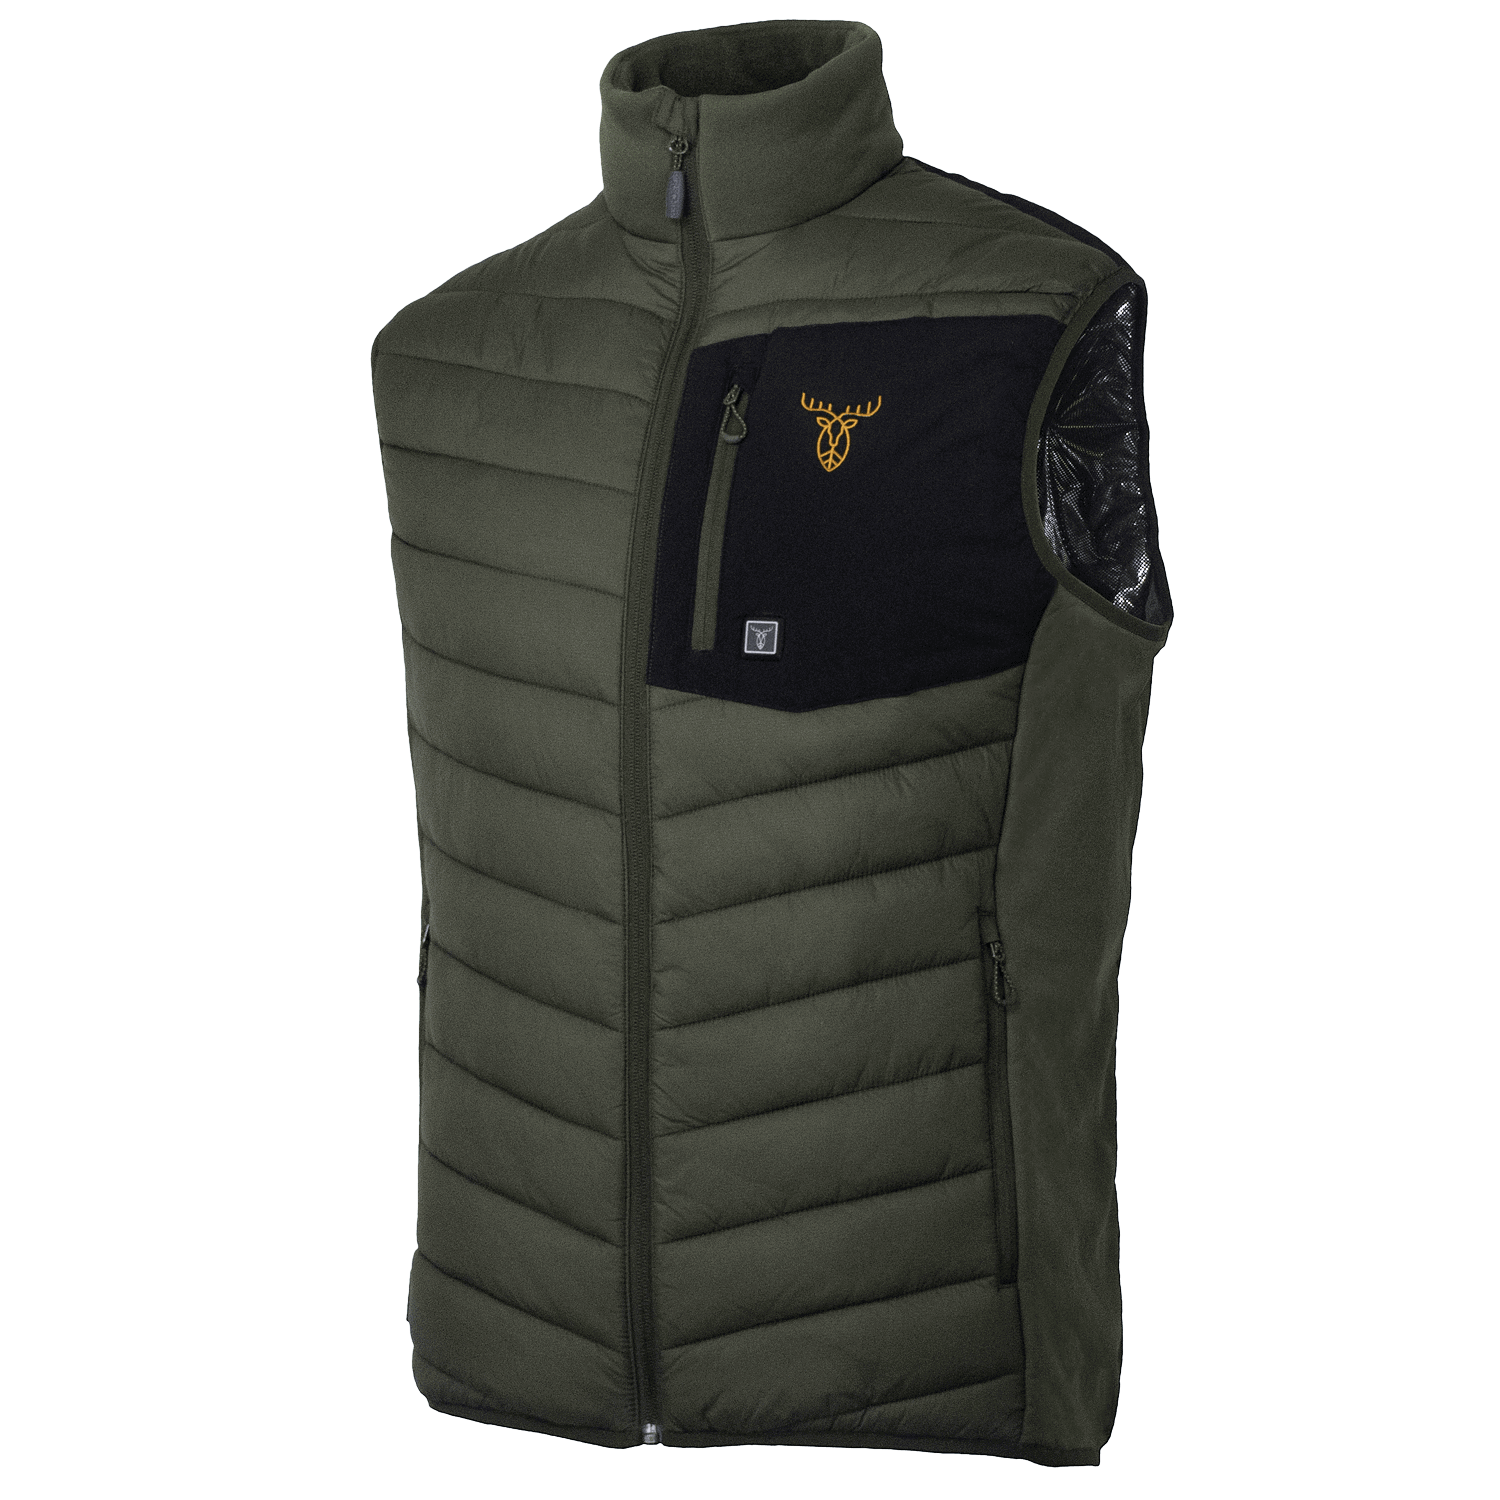 Pirscher Gear Heated Vest - Heated Clothing